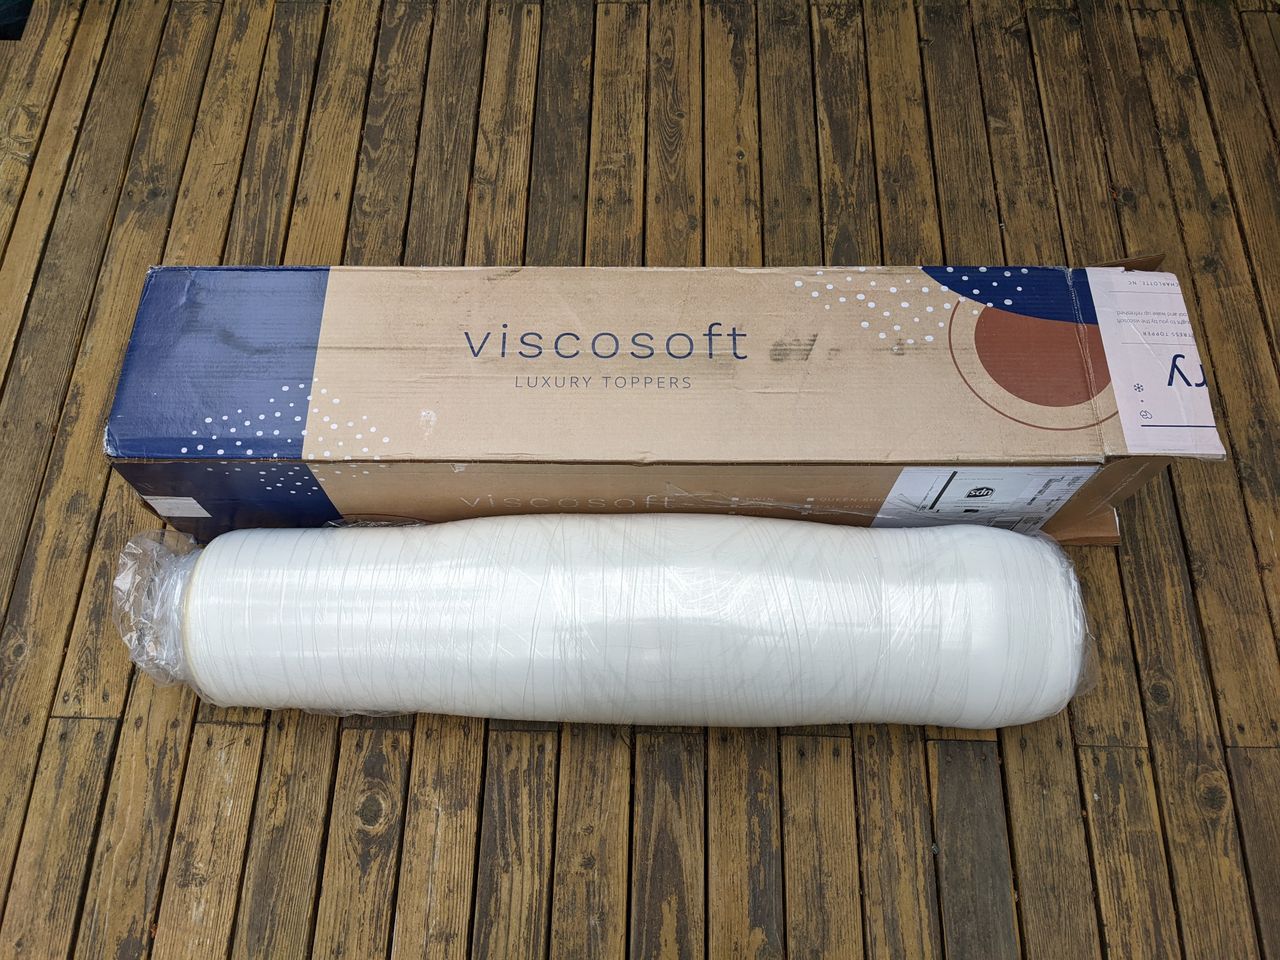 viscosoft 4 inch mattress topper reviews